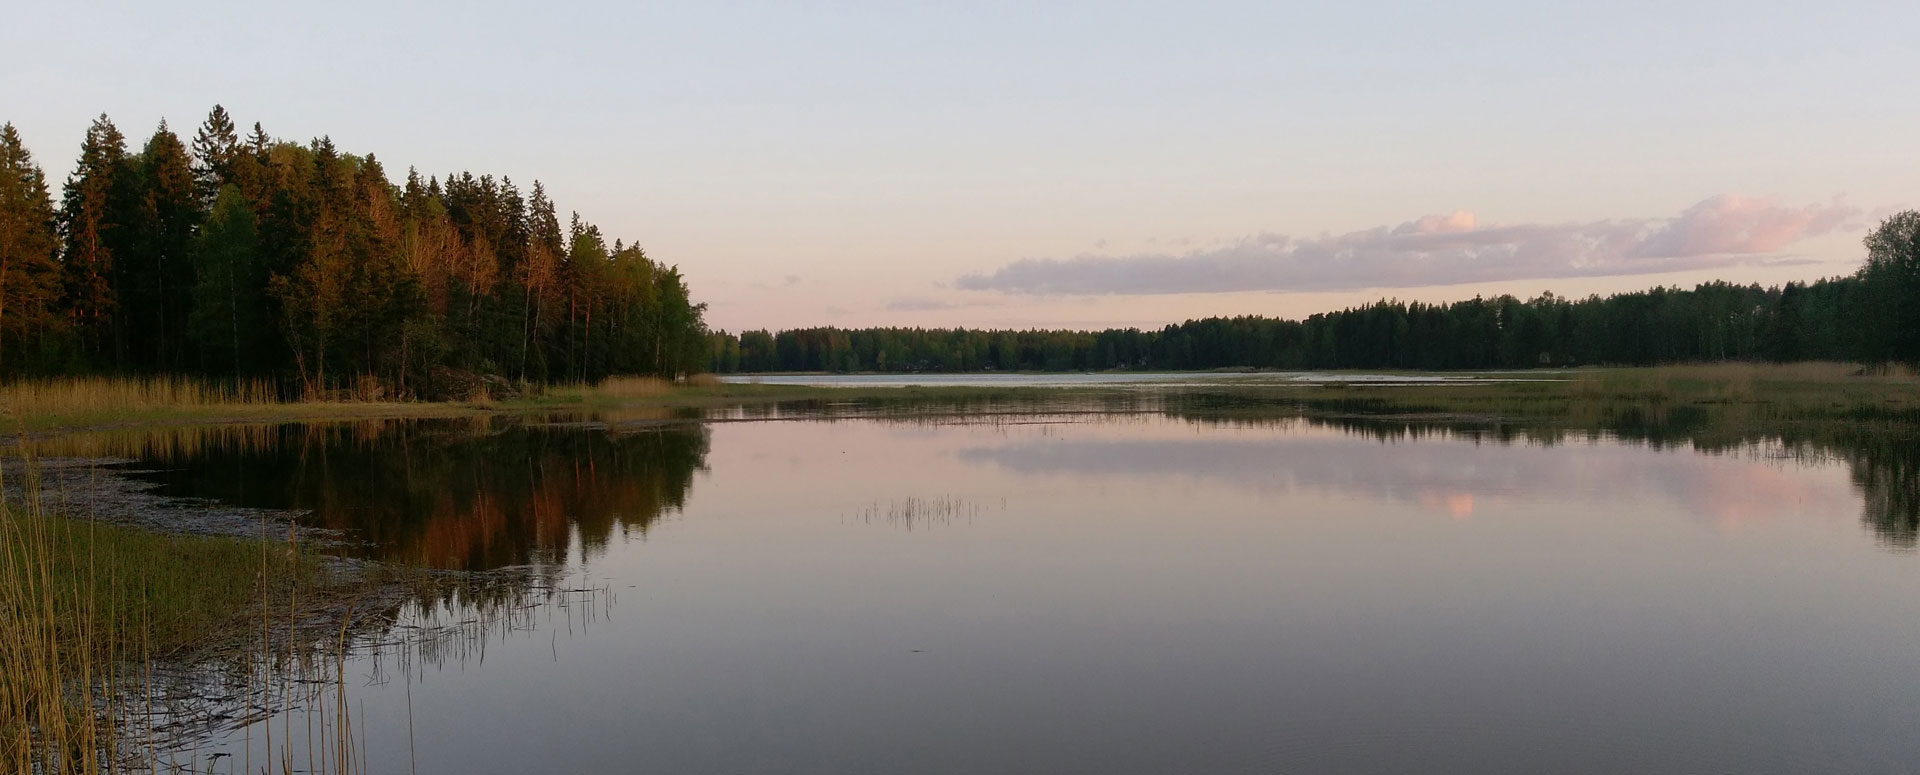 Urlaub in Finnland - Blick auf den Golf von Finnland von der nahegelegenen 5-Sterne Villa Mäntykallio